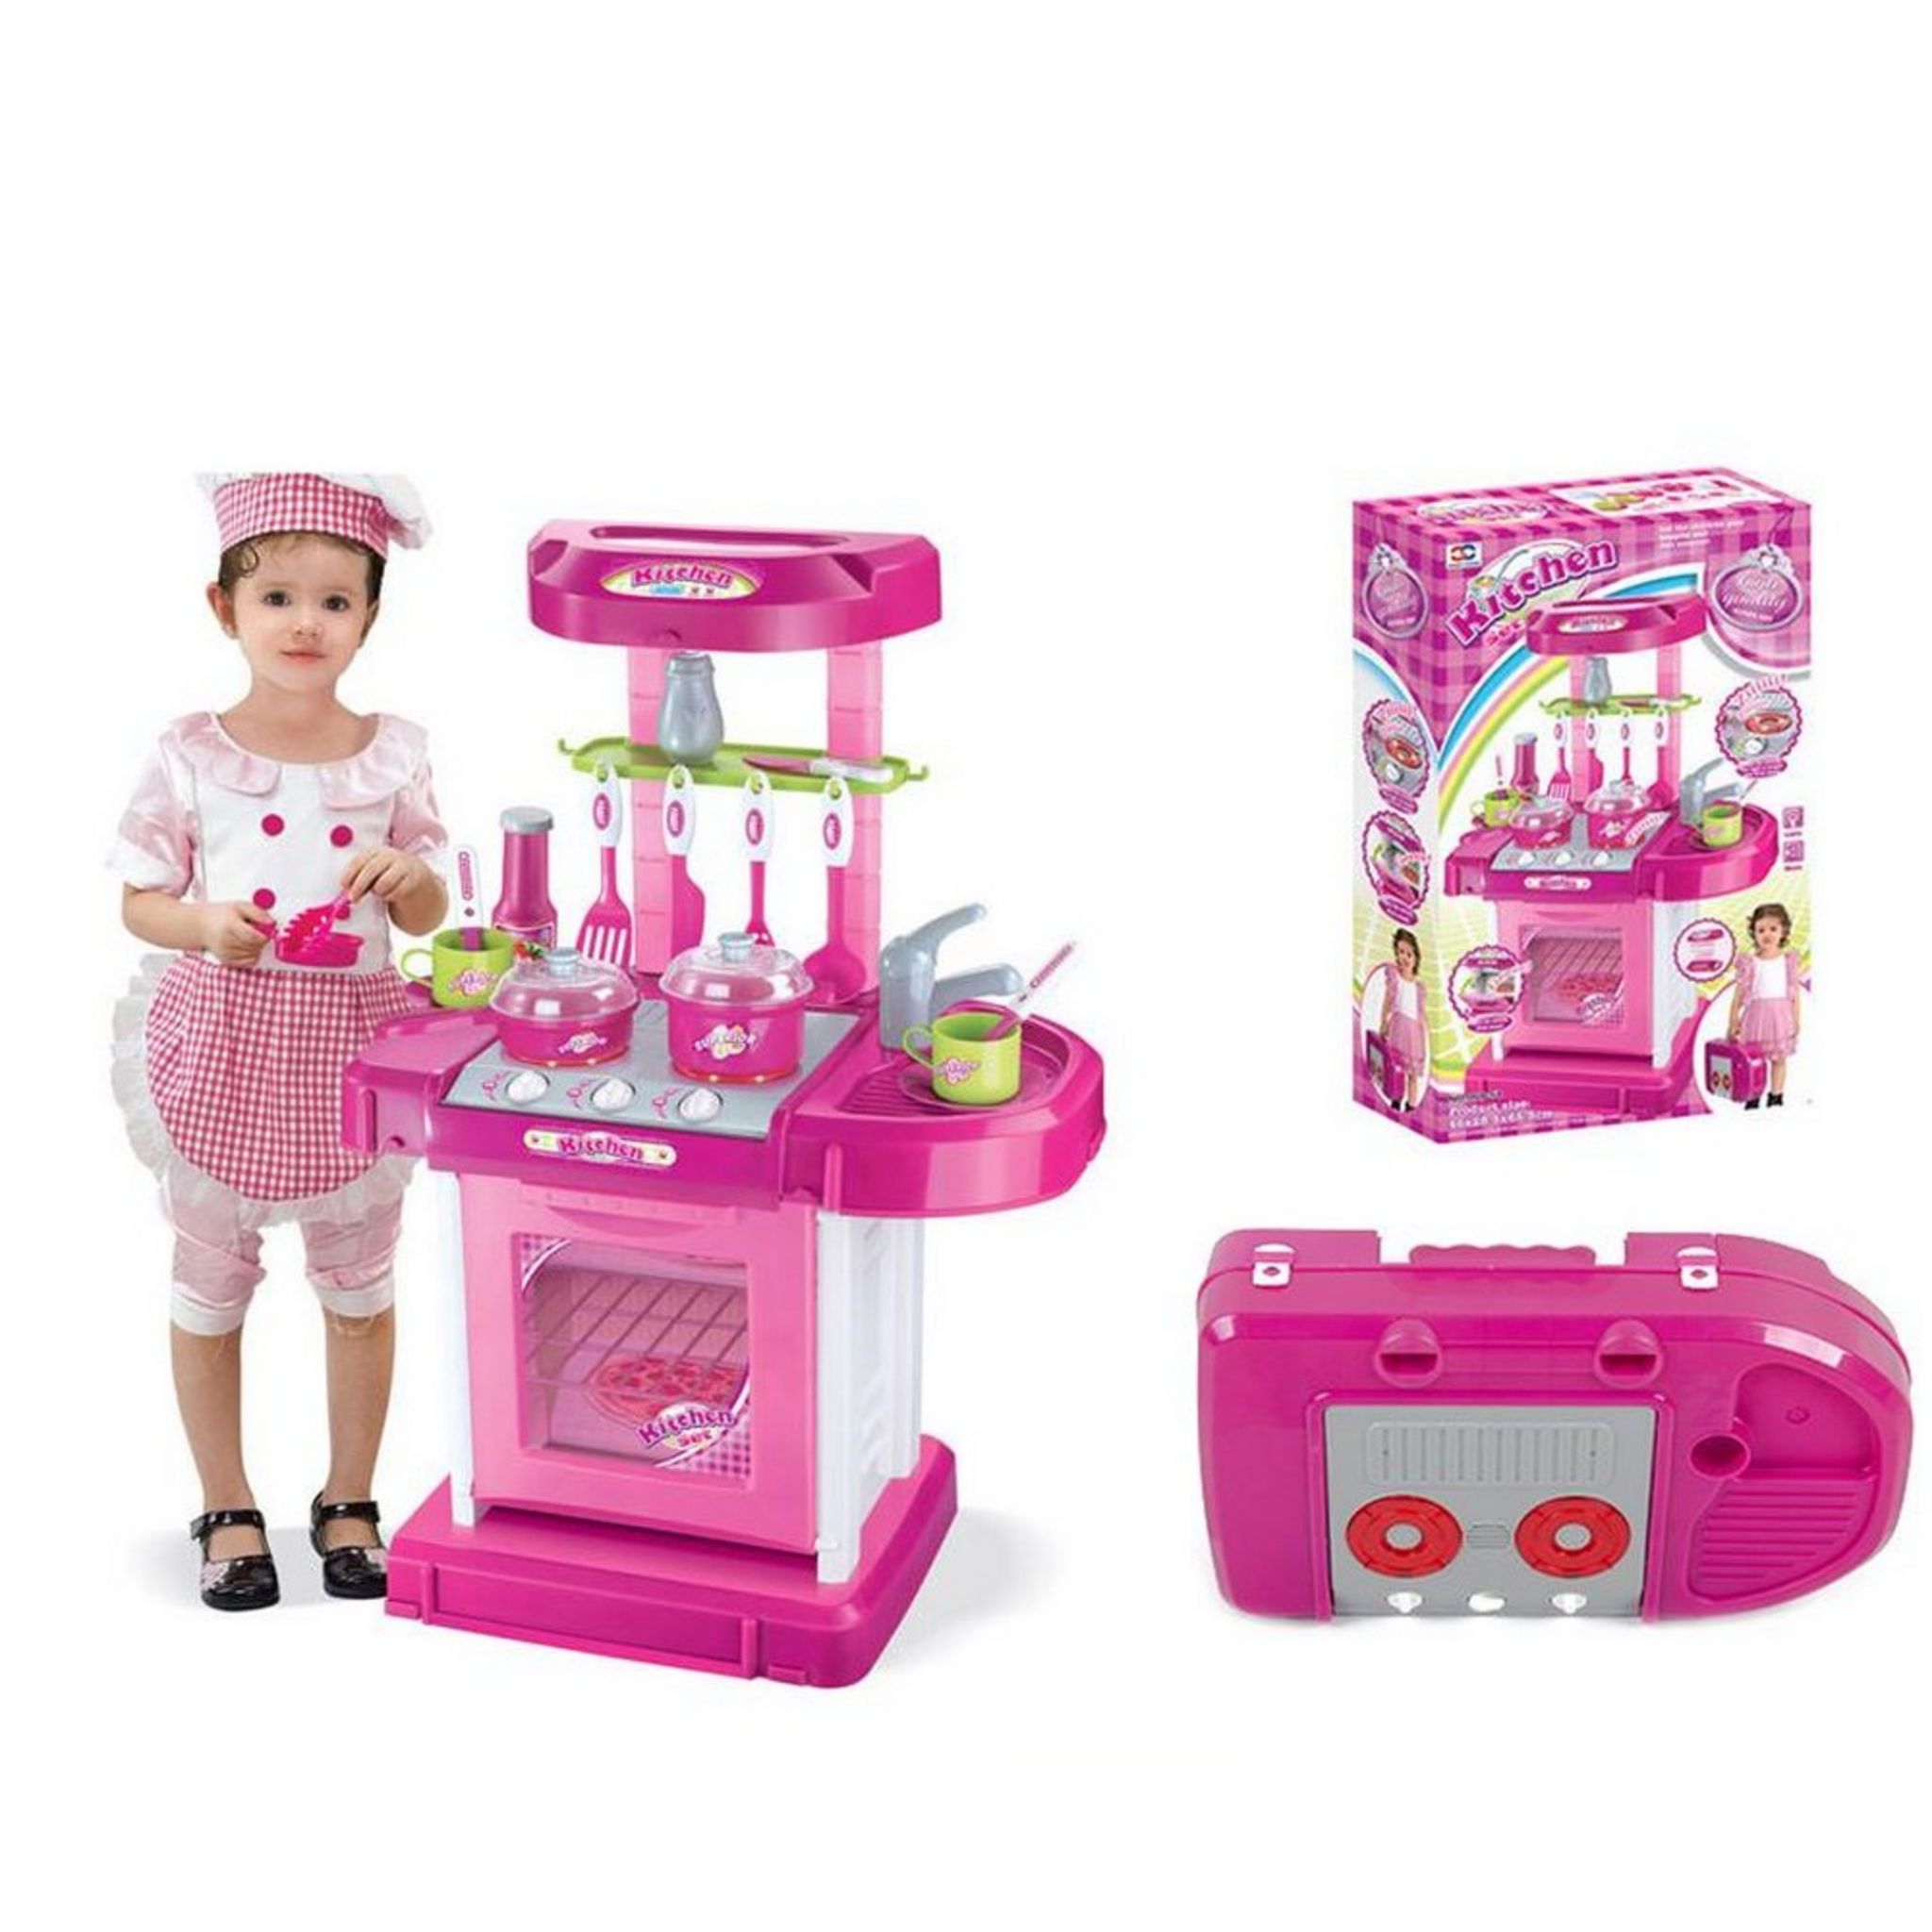 Costway jouet cuisine dinette enfant aliment jeux cuisine pour enfant, avec  robinet son analogique, éclairage,évier amovible - Conforama